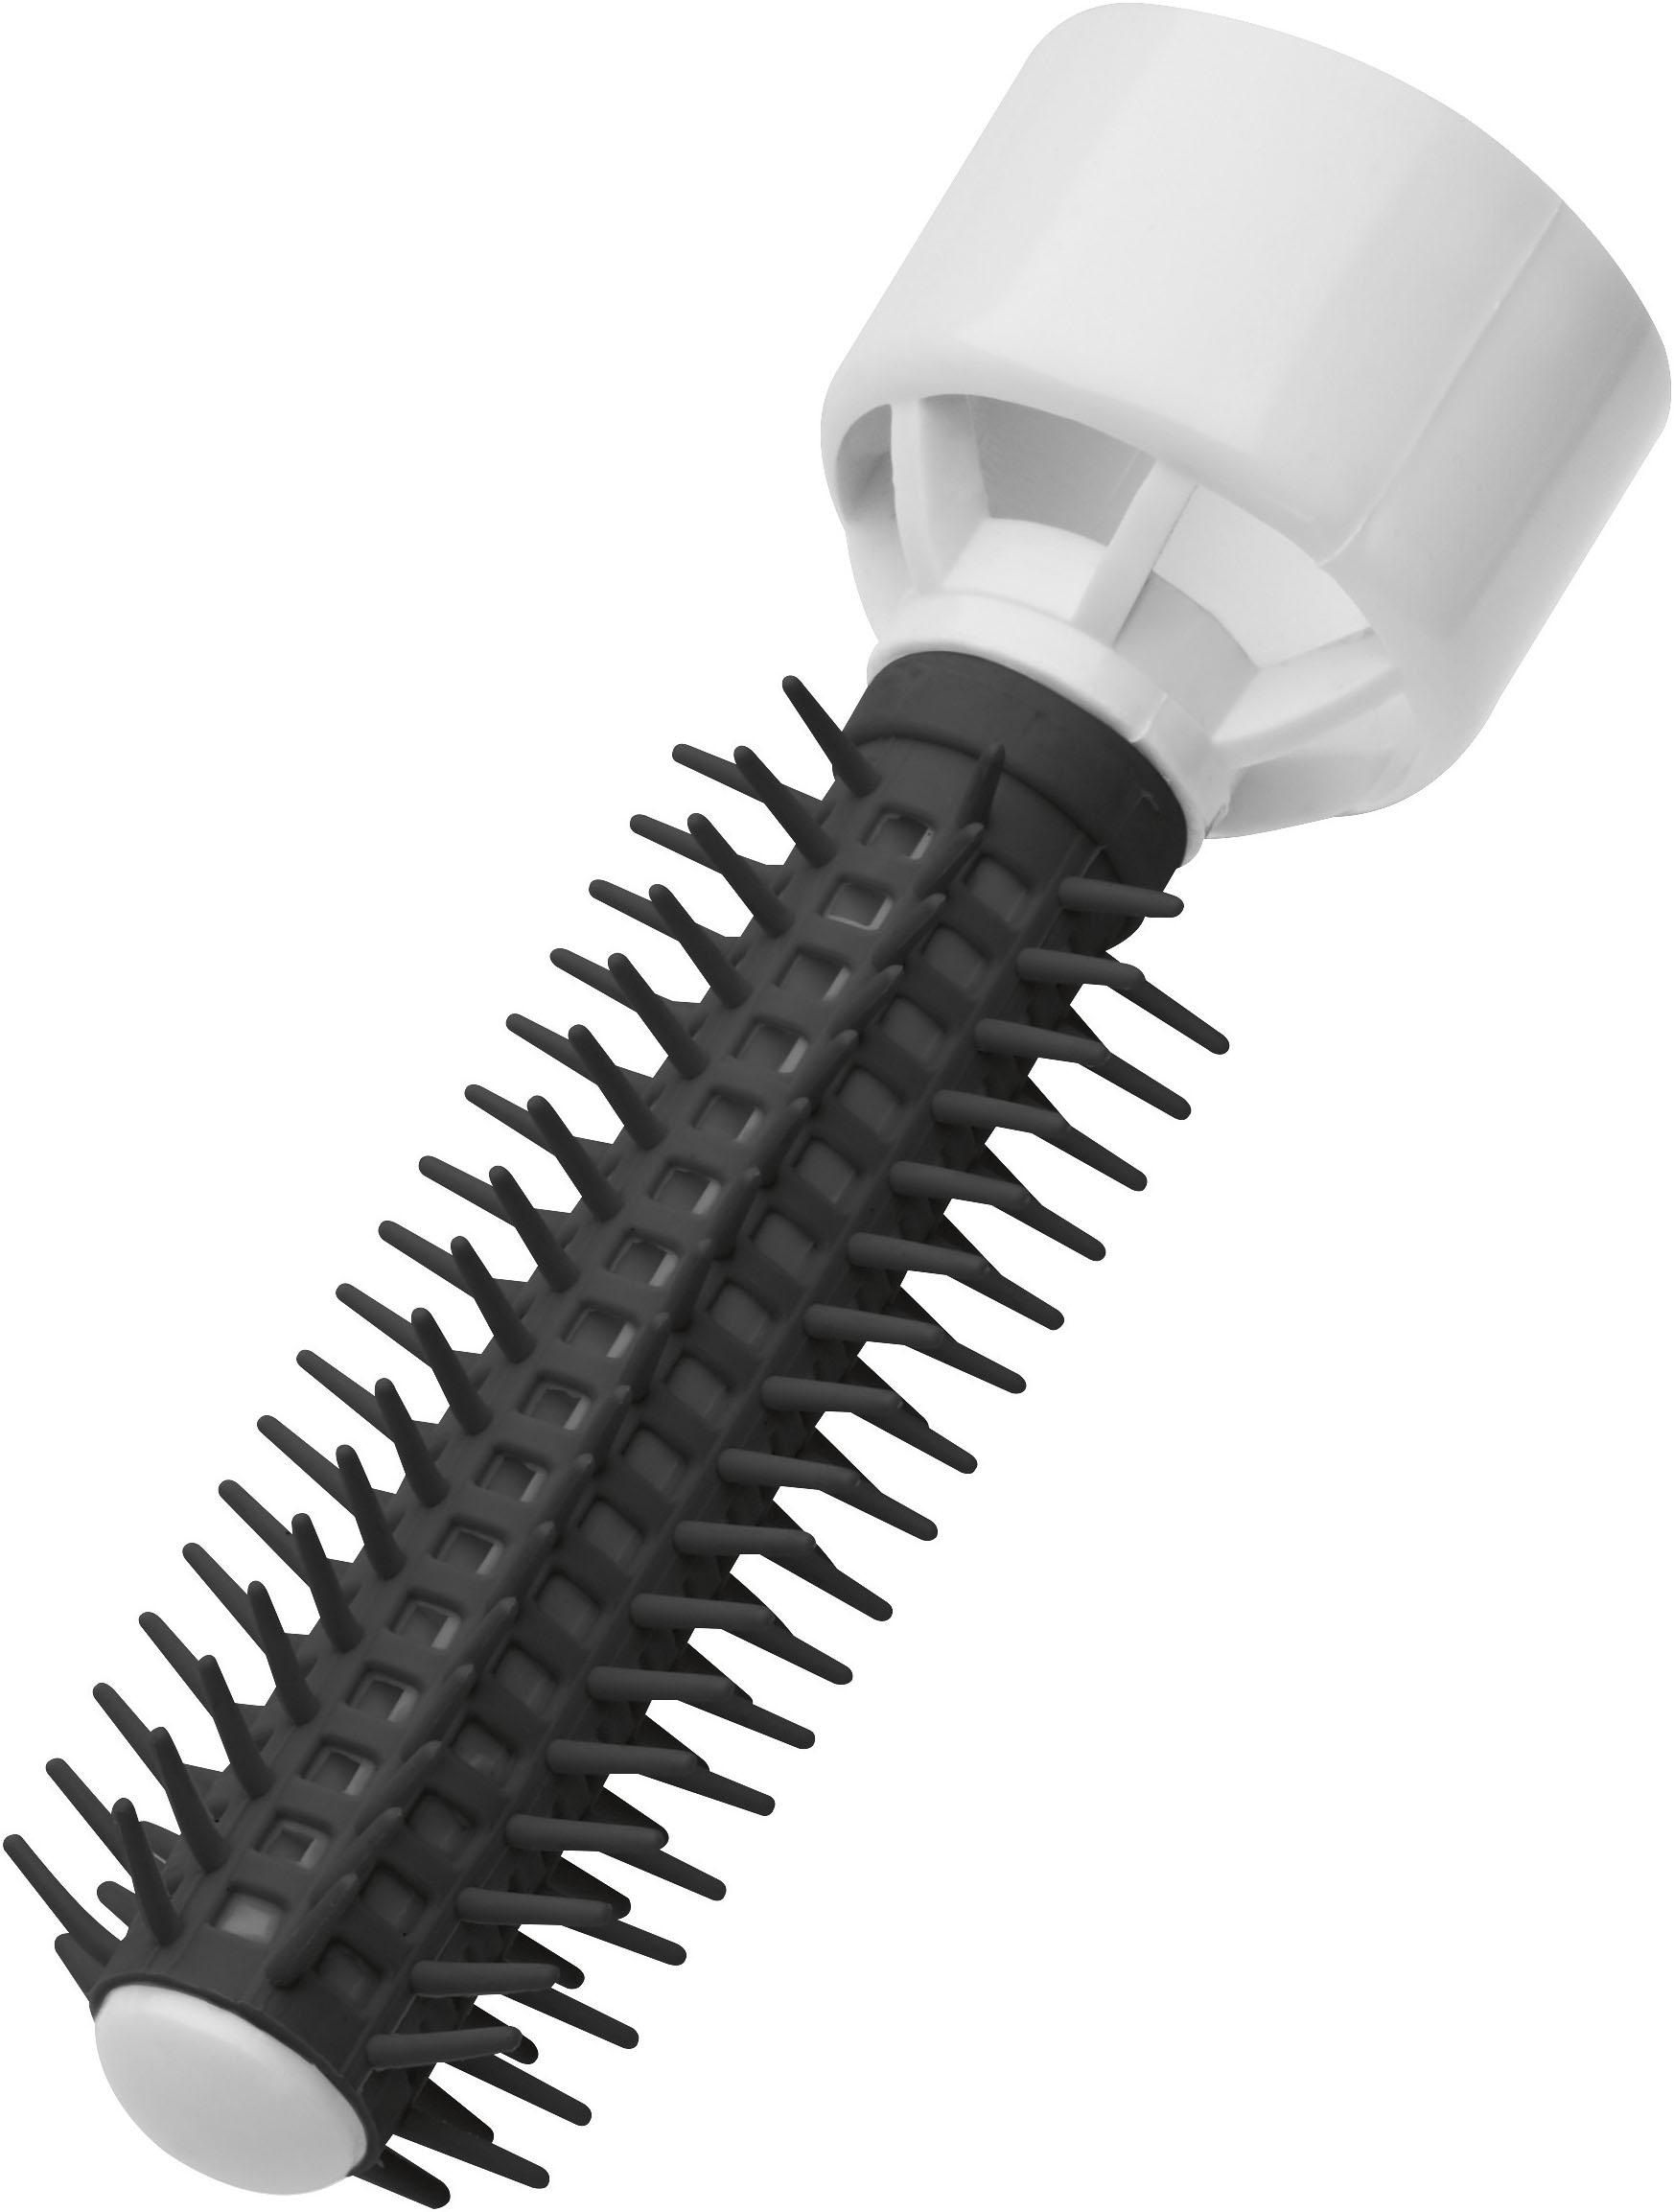 ProfiCare Haartrockenhaube »PC-HTH 3003«, 400 W, 2 Aufsätze, Trockenhaube,  Haartrockner + Lockenbürste in Einem jetzt online bei OTTO